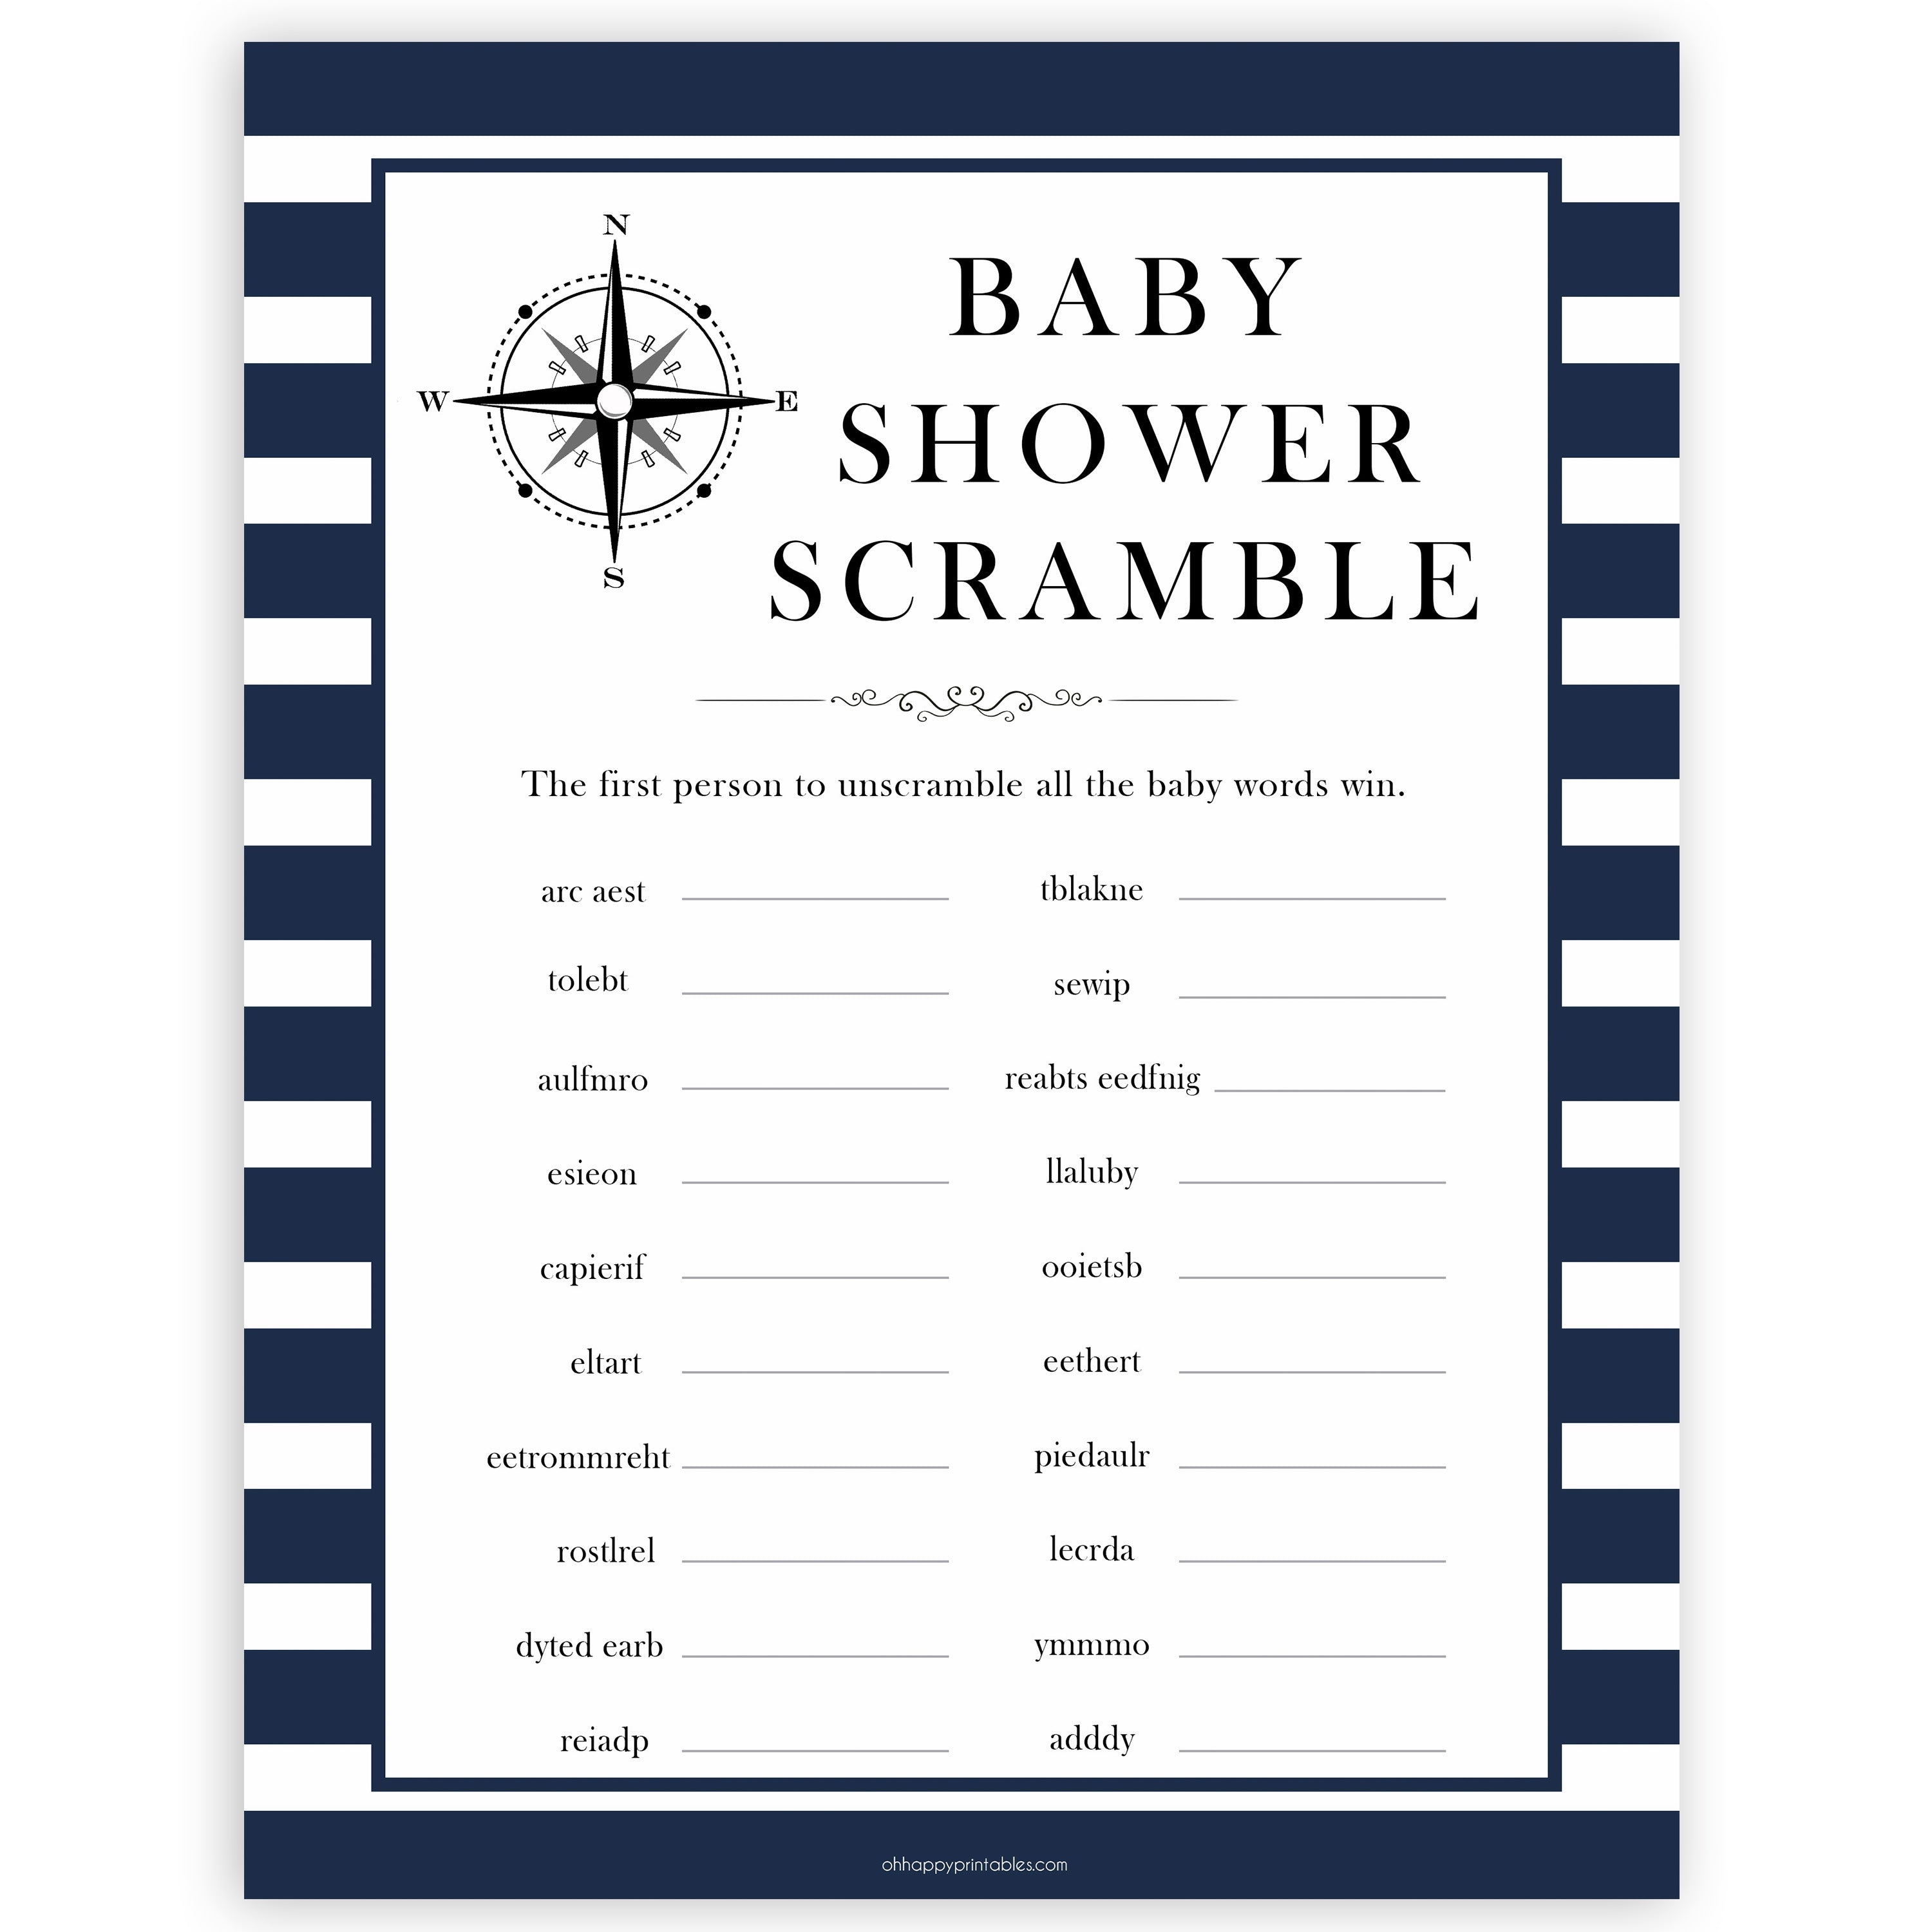 Nautical baby shower games, baby scramble baby shower games, printable baby shower games, baby shower games, fun baby games, popular baby shower games, sailor baby games, boat baby games